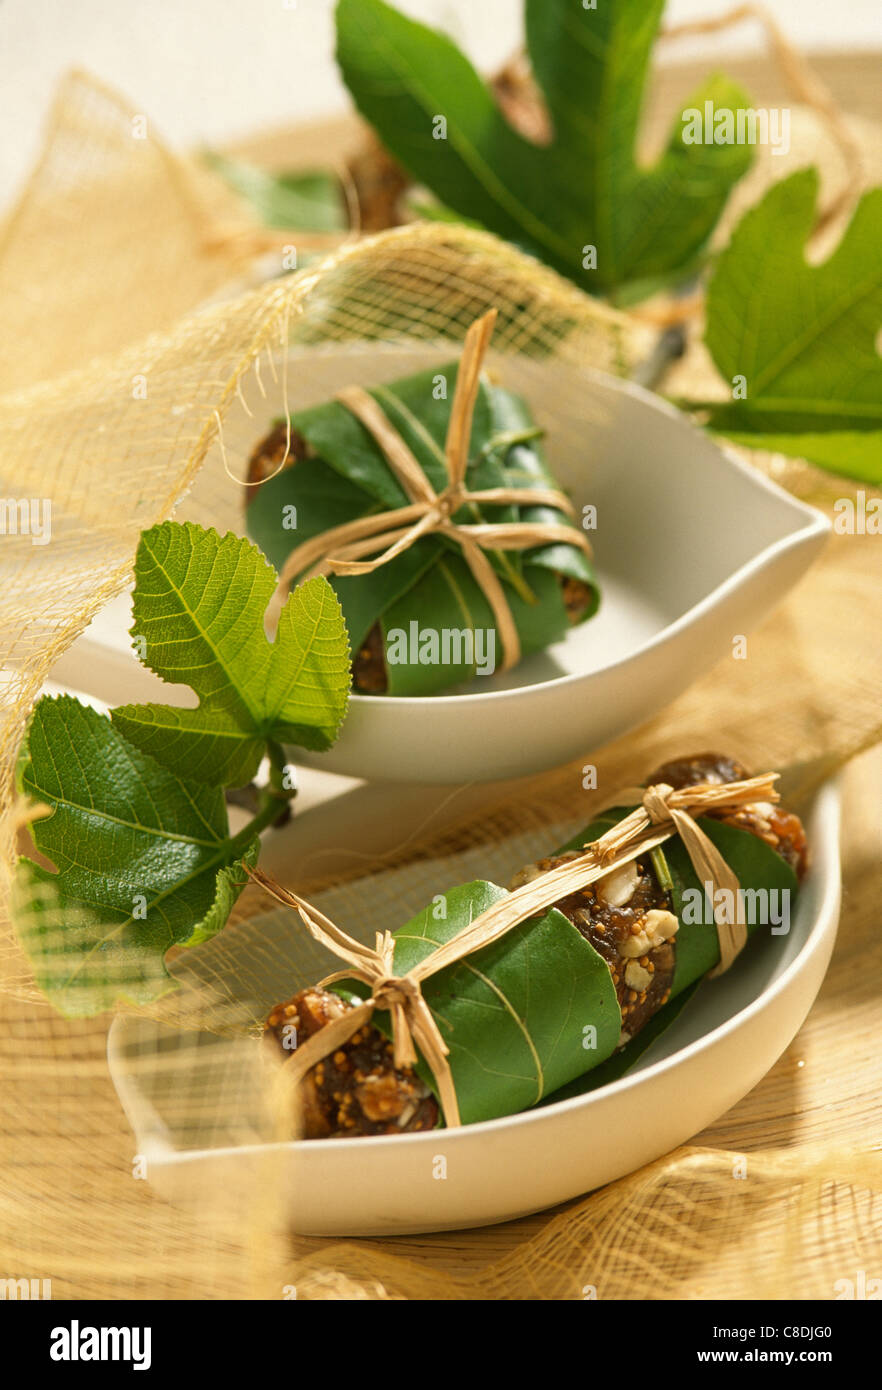 Les figues séchées enveloppées dans des feuilles de figuier Banque D'Images